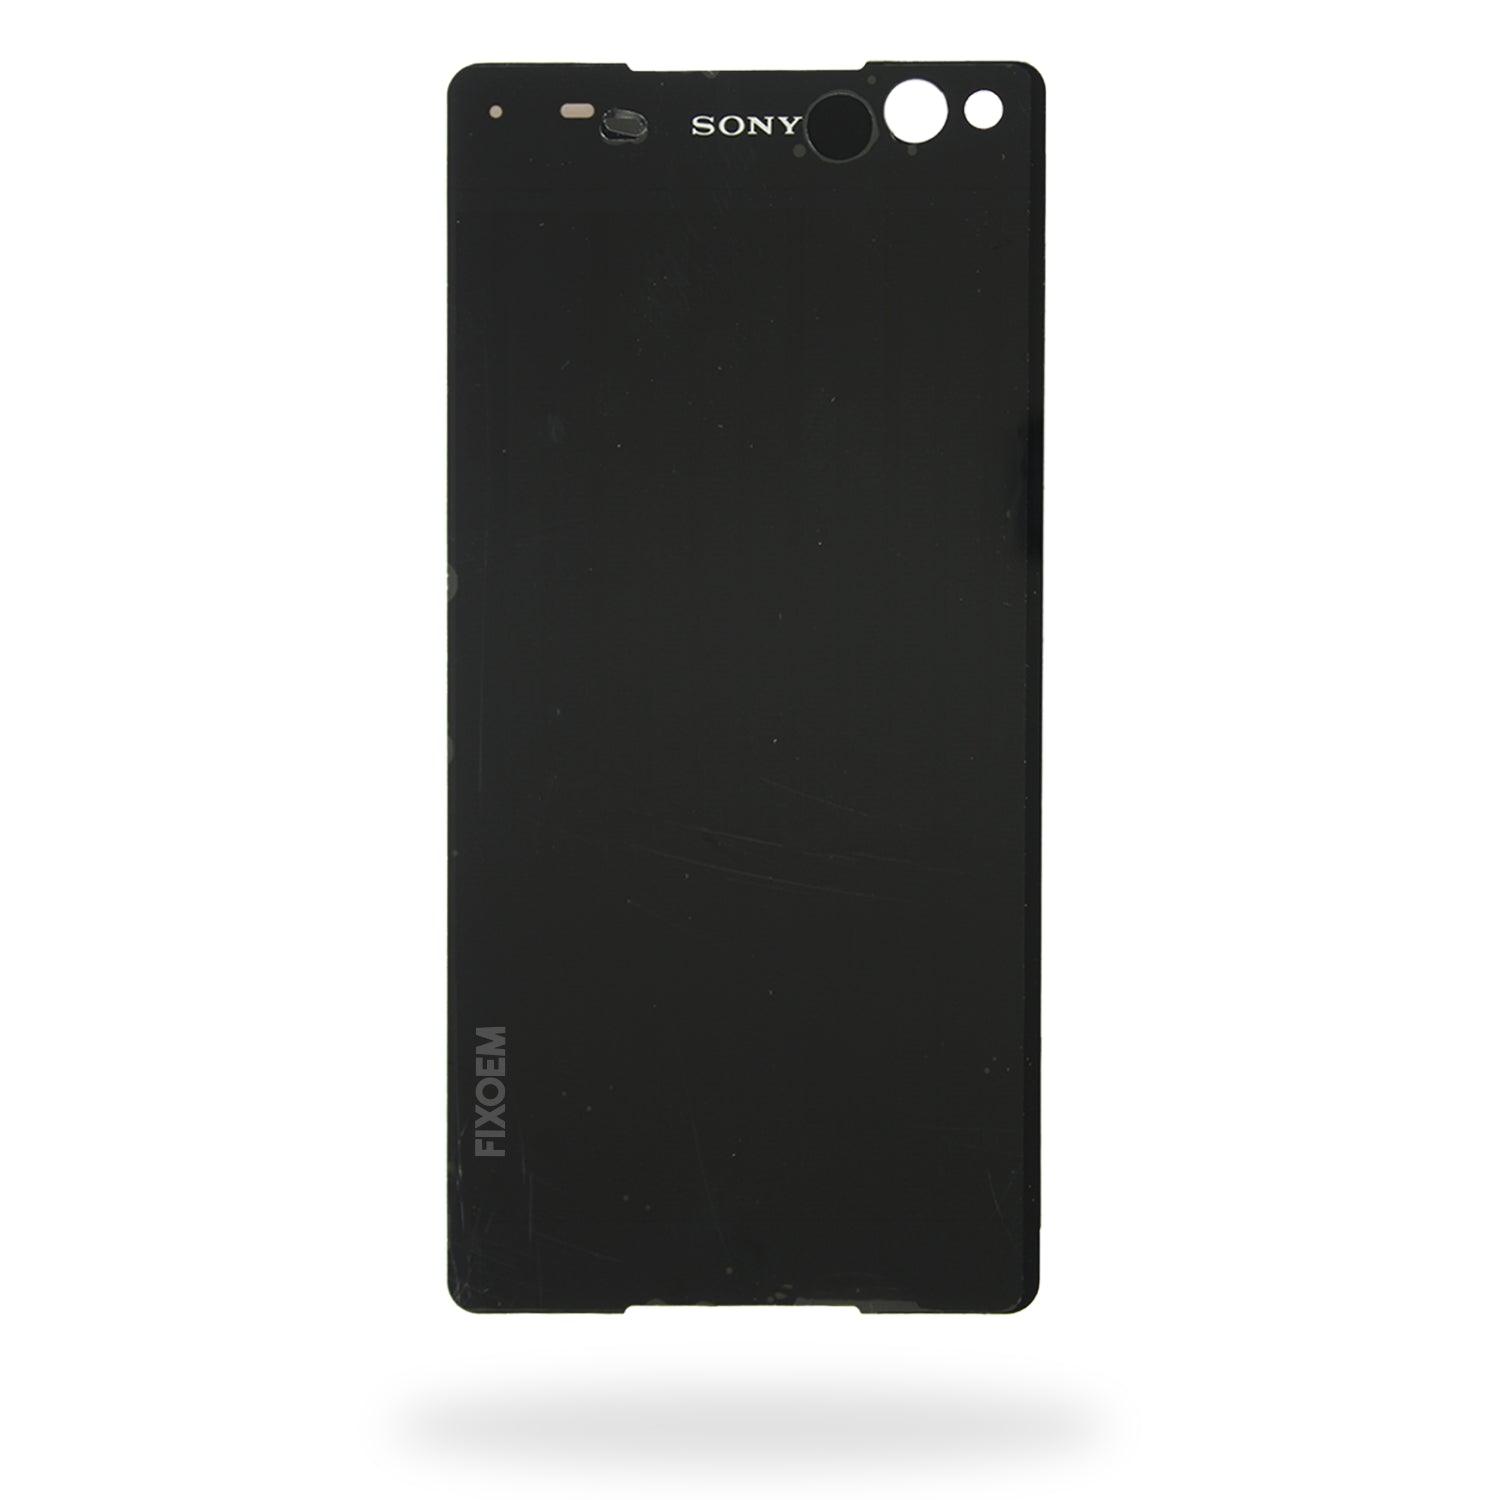 Display Sony C5 Ultra IPS E5506 a solo $ 550.00 Refaccion y puestos celulares, refurbish y microelectronica.- FixOEM